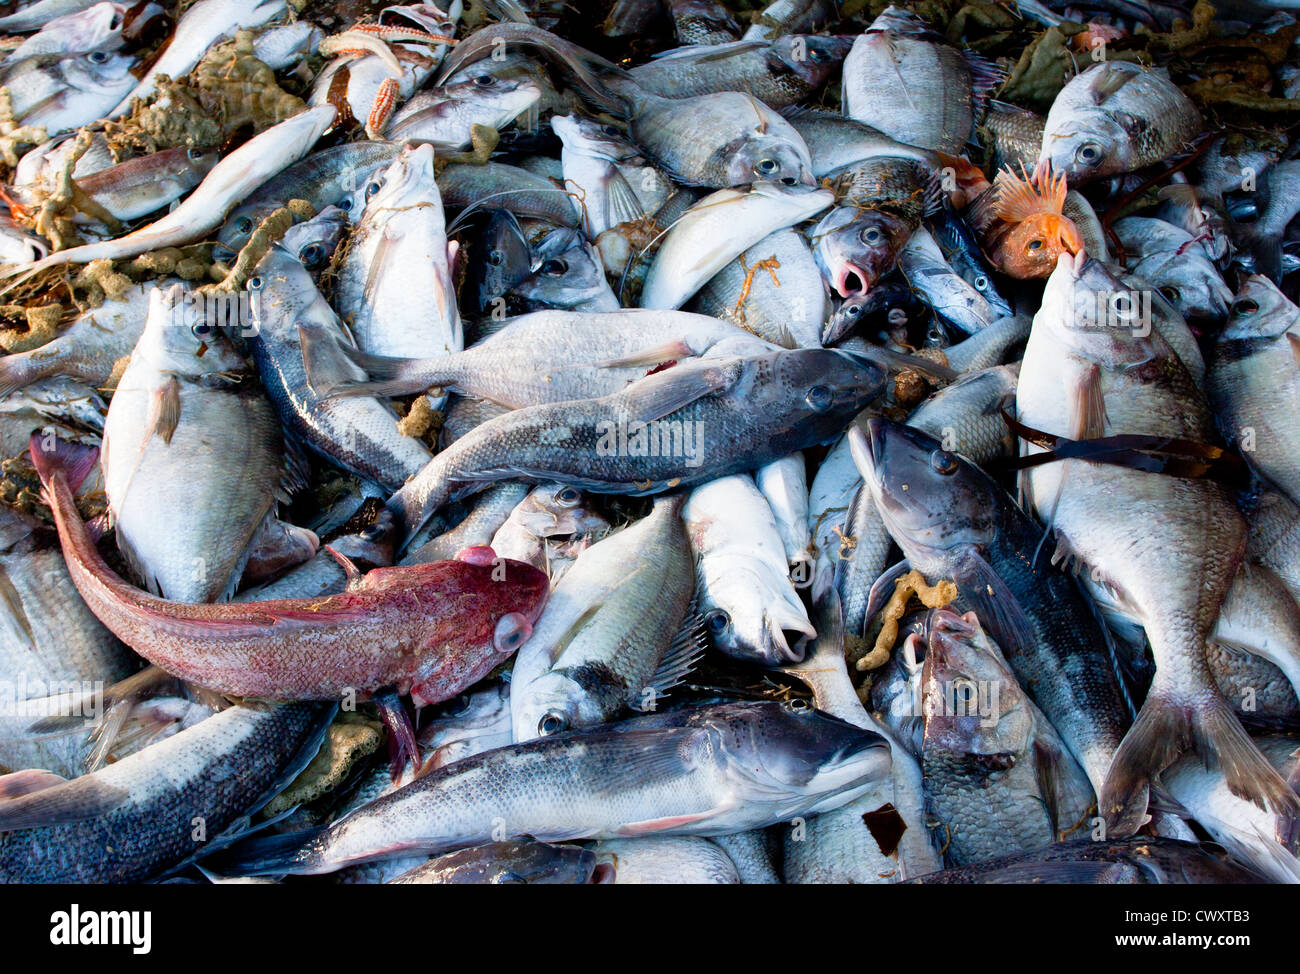 Lance de red de arrastre en un arrastrero de pesca comercial: Azul bacalao, bacalao, Tarakihi rojo. Foto de stock